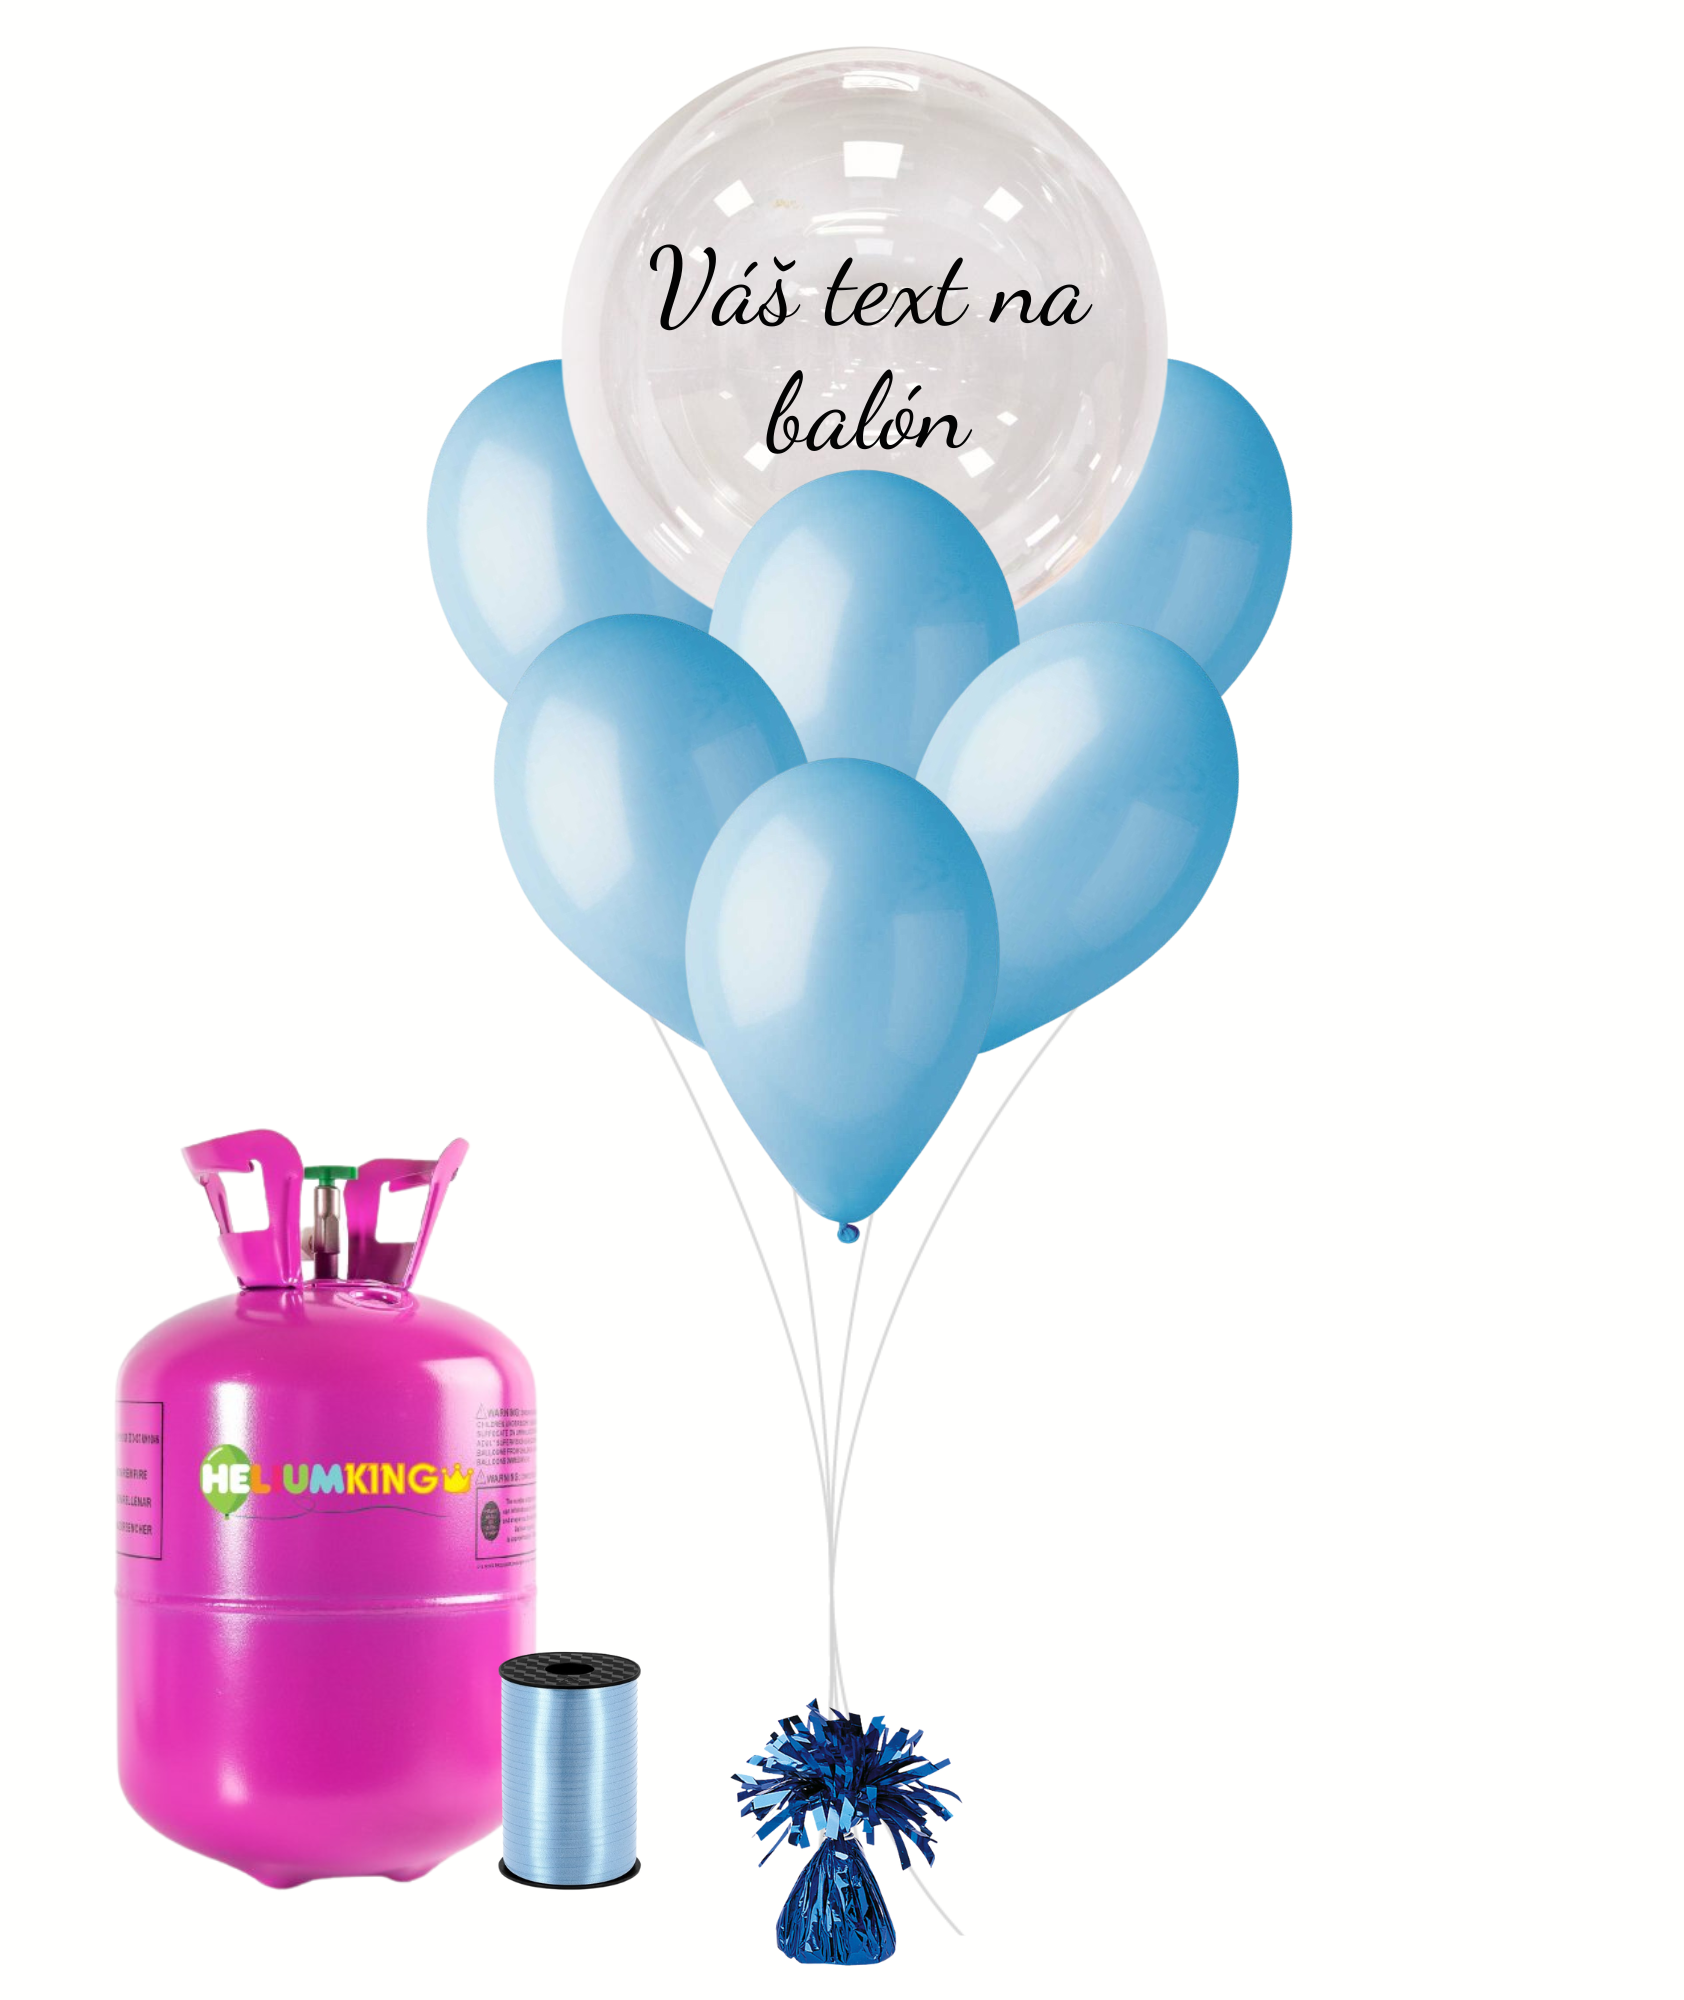 Personal Personalizovaný helium párty set modrý - Průsvitný balón 11 ks